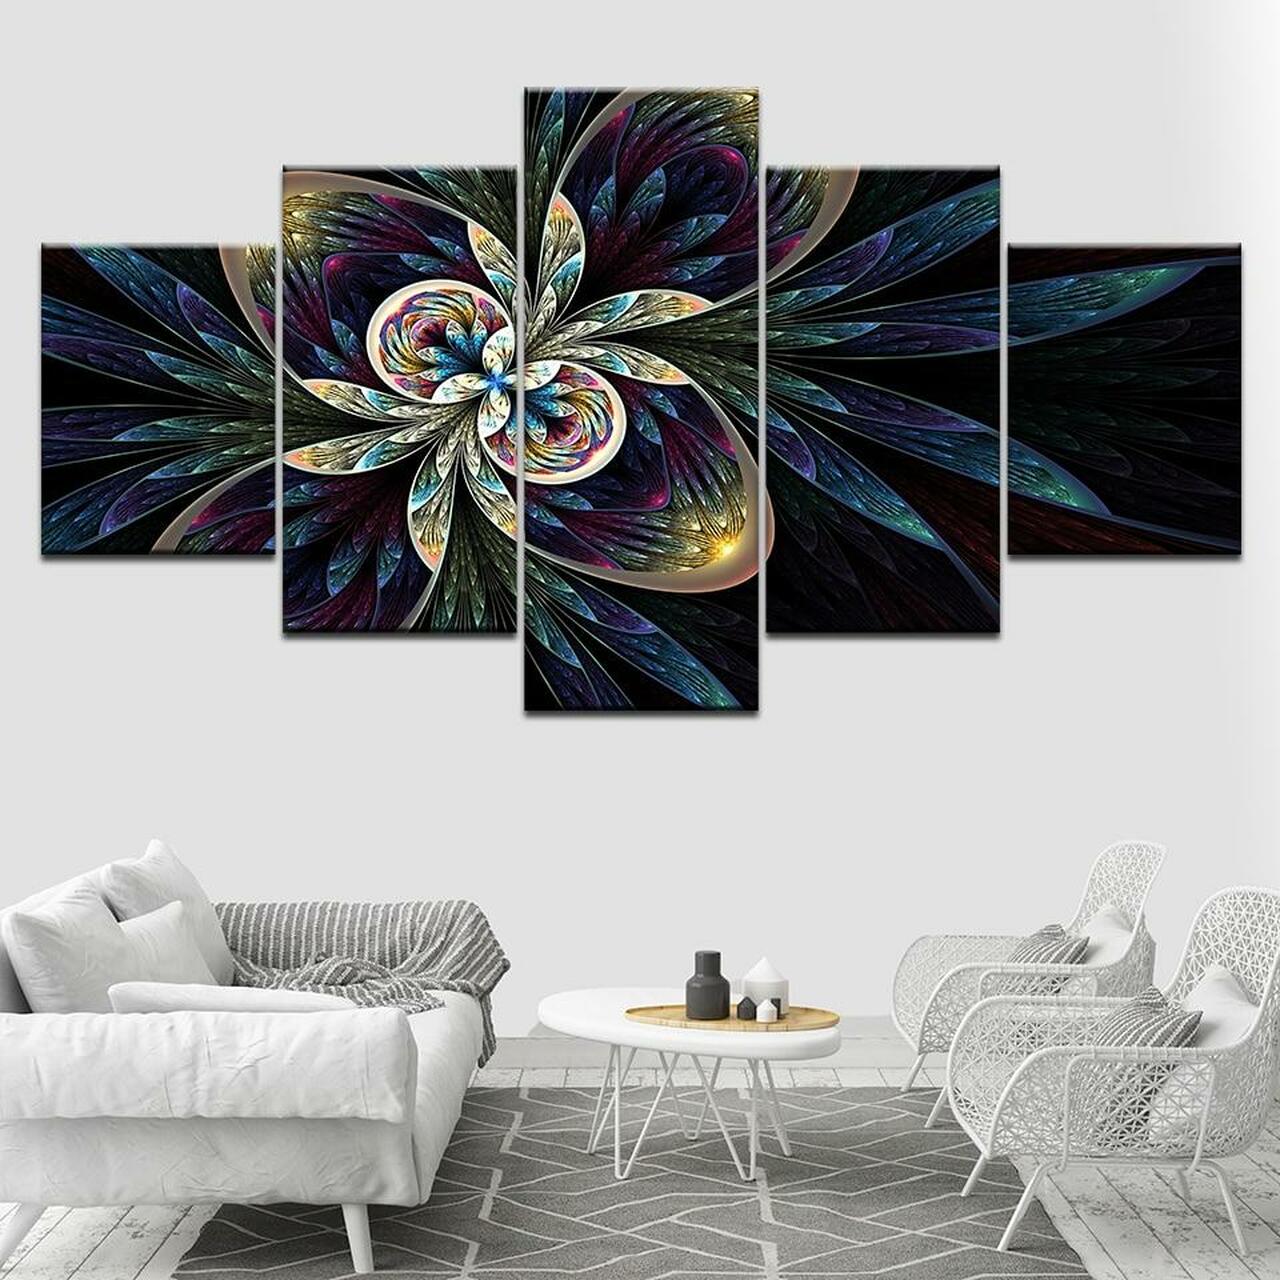 patterns of flower 5 pices peinture sur toile impression sur toile toile art pour la dcoration intrieureorlpl